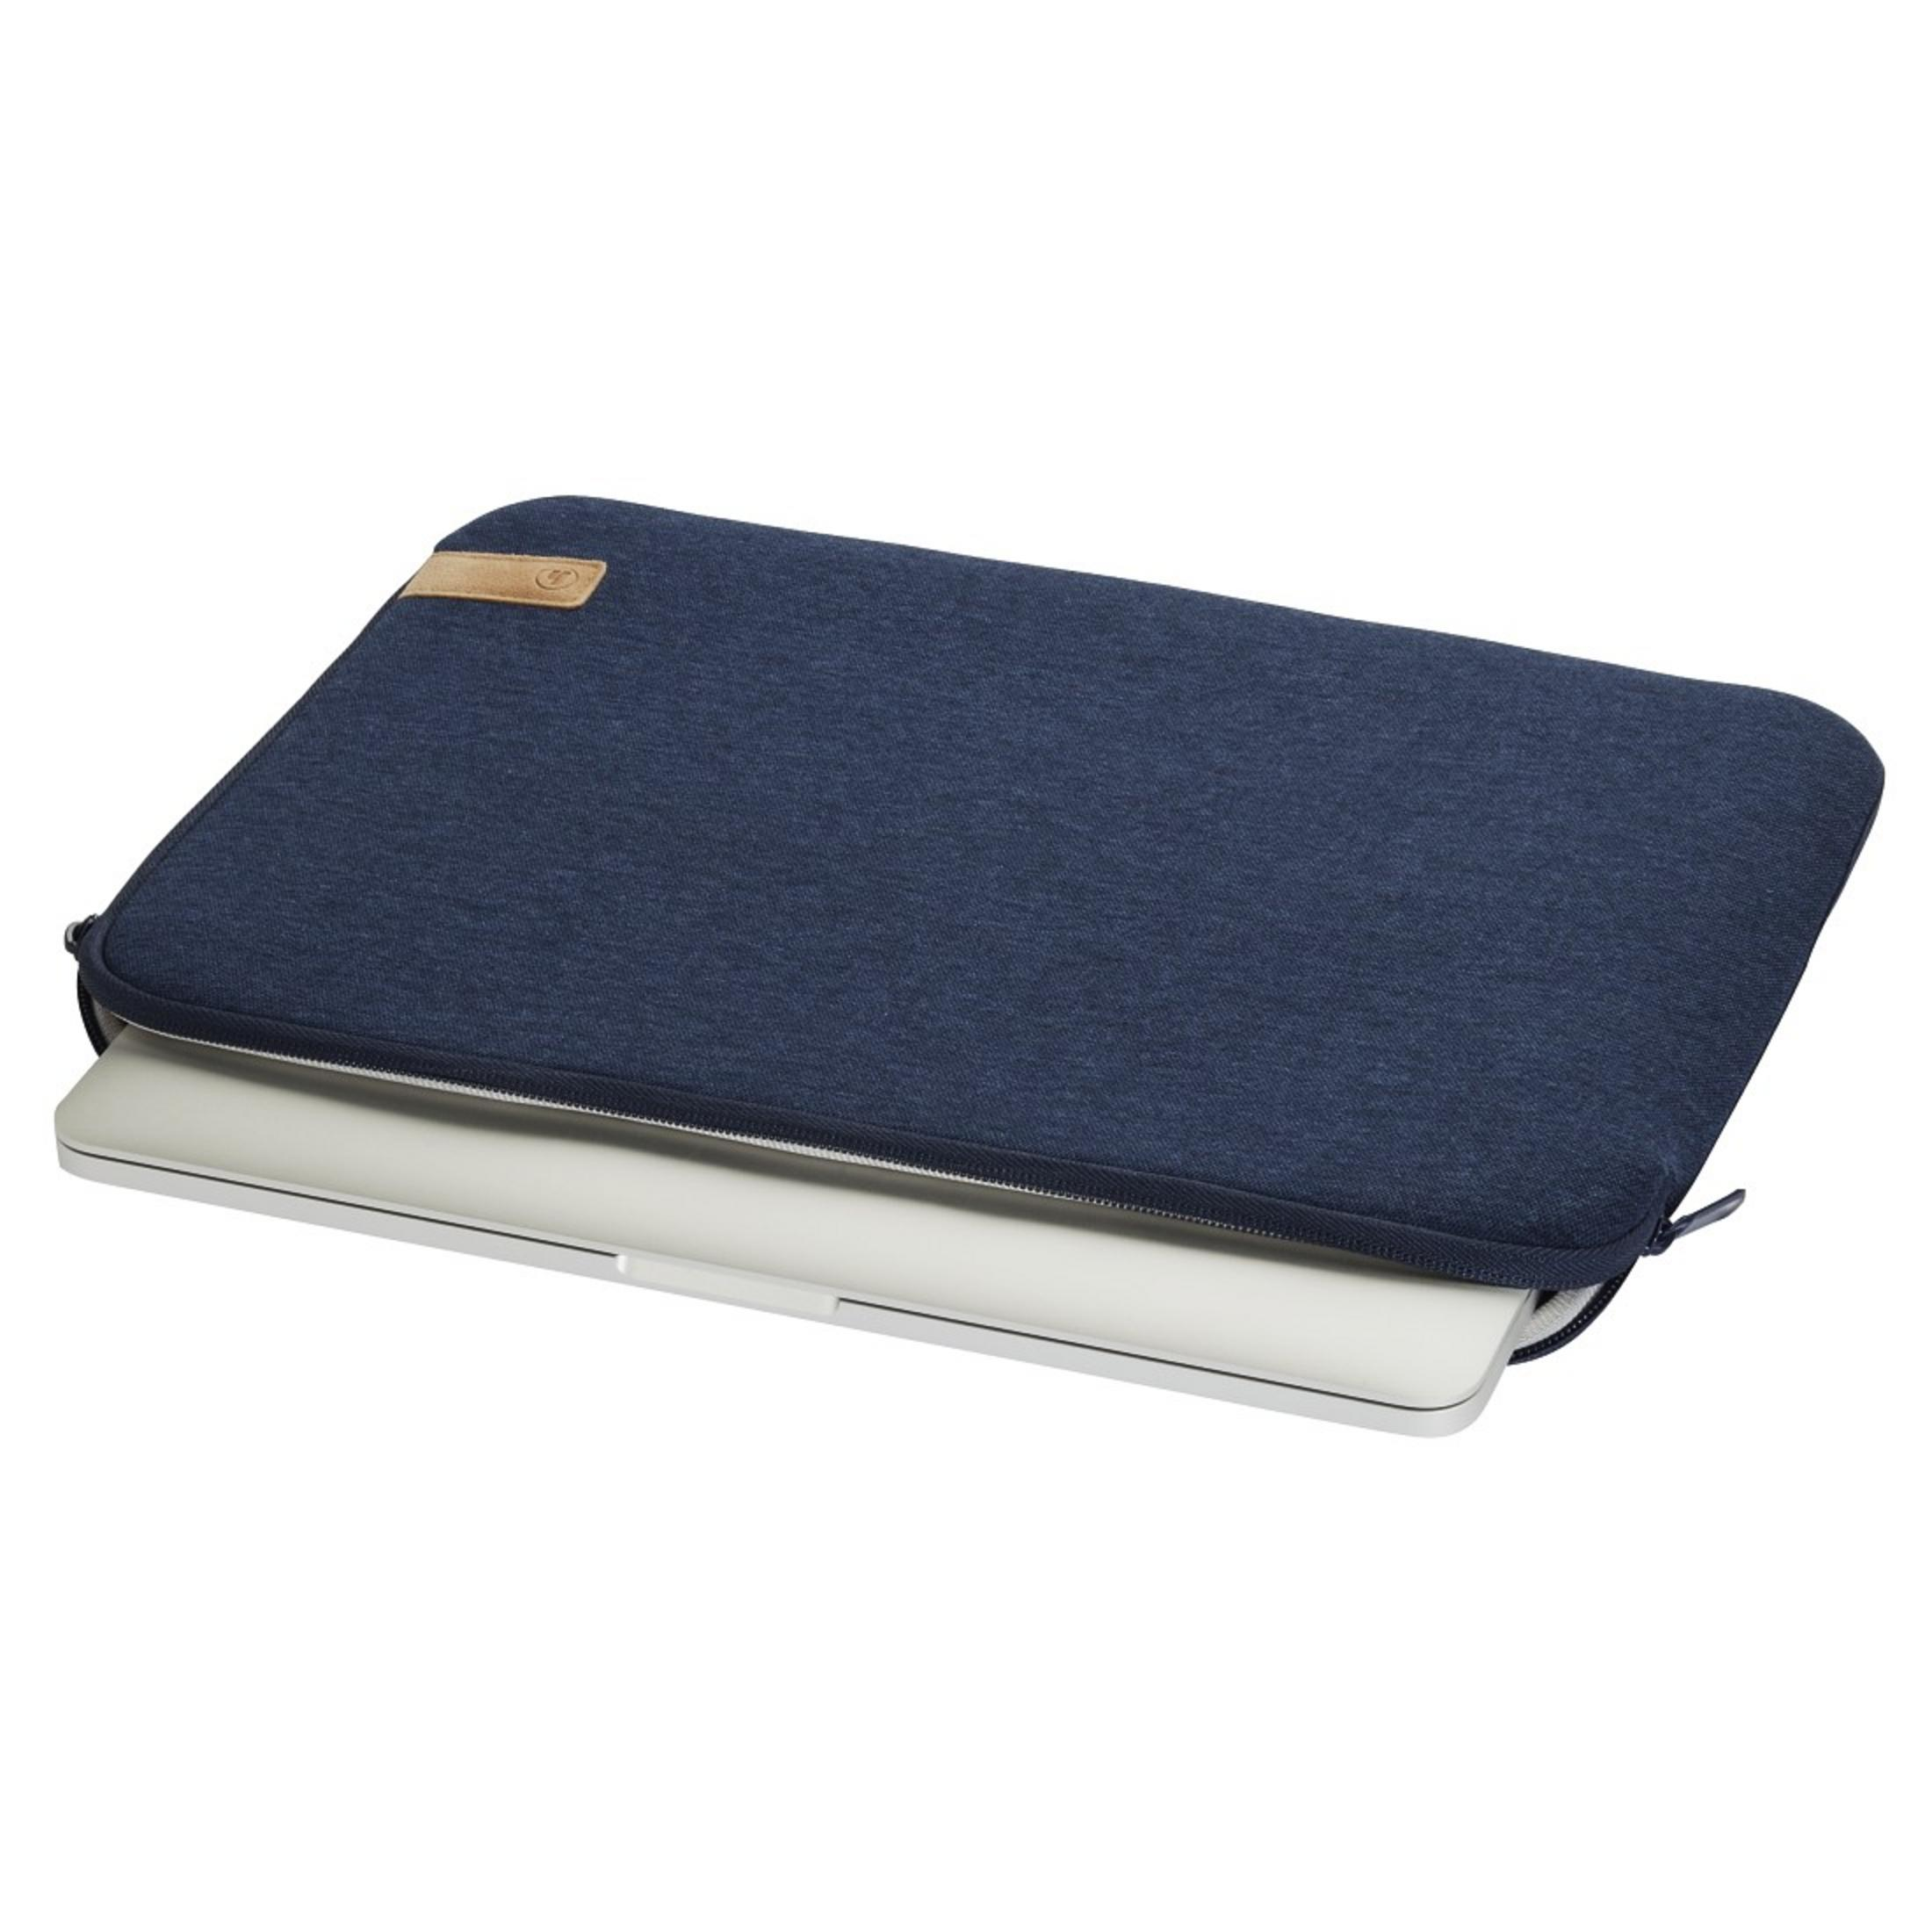 HAMA 101811 NB-SLE JERSEY 15.6 Jersey, BLAU Universal Sleeve Blau Notebooktasche für